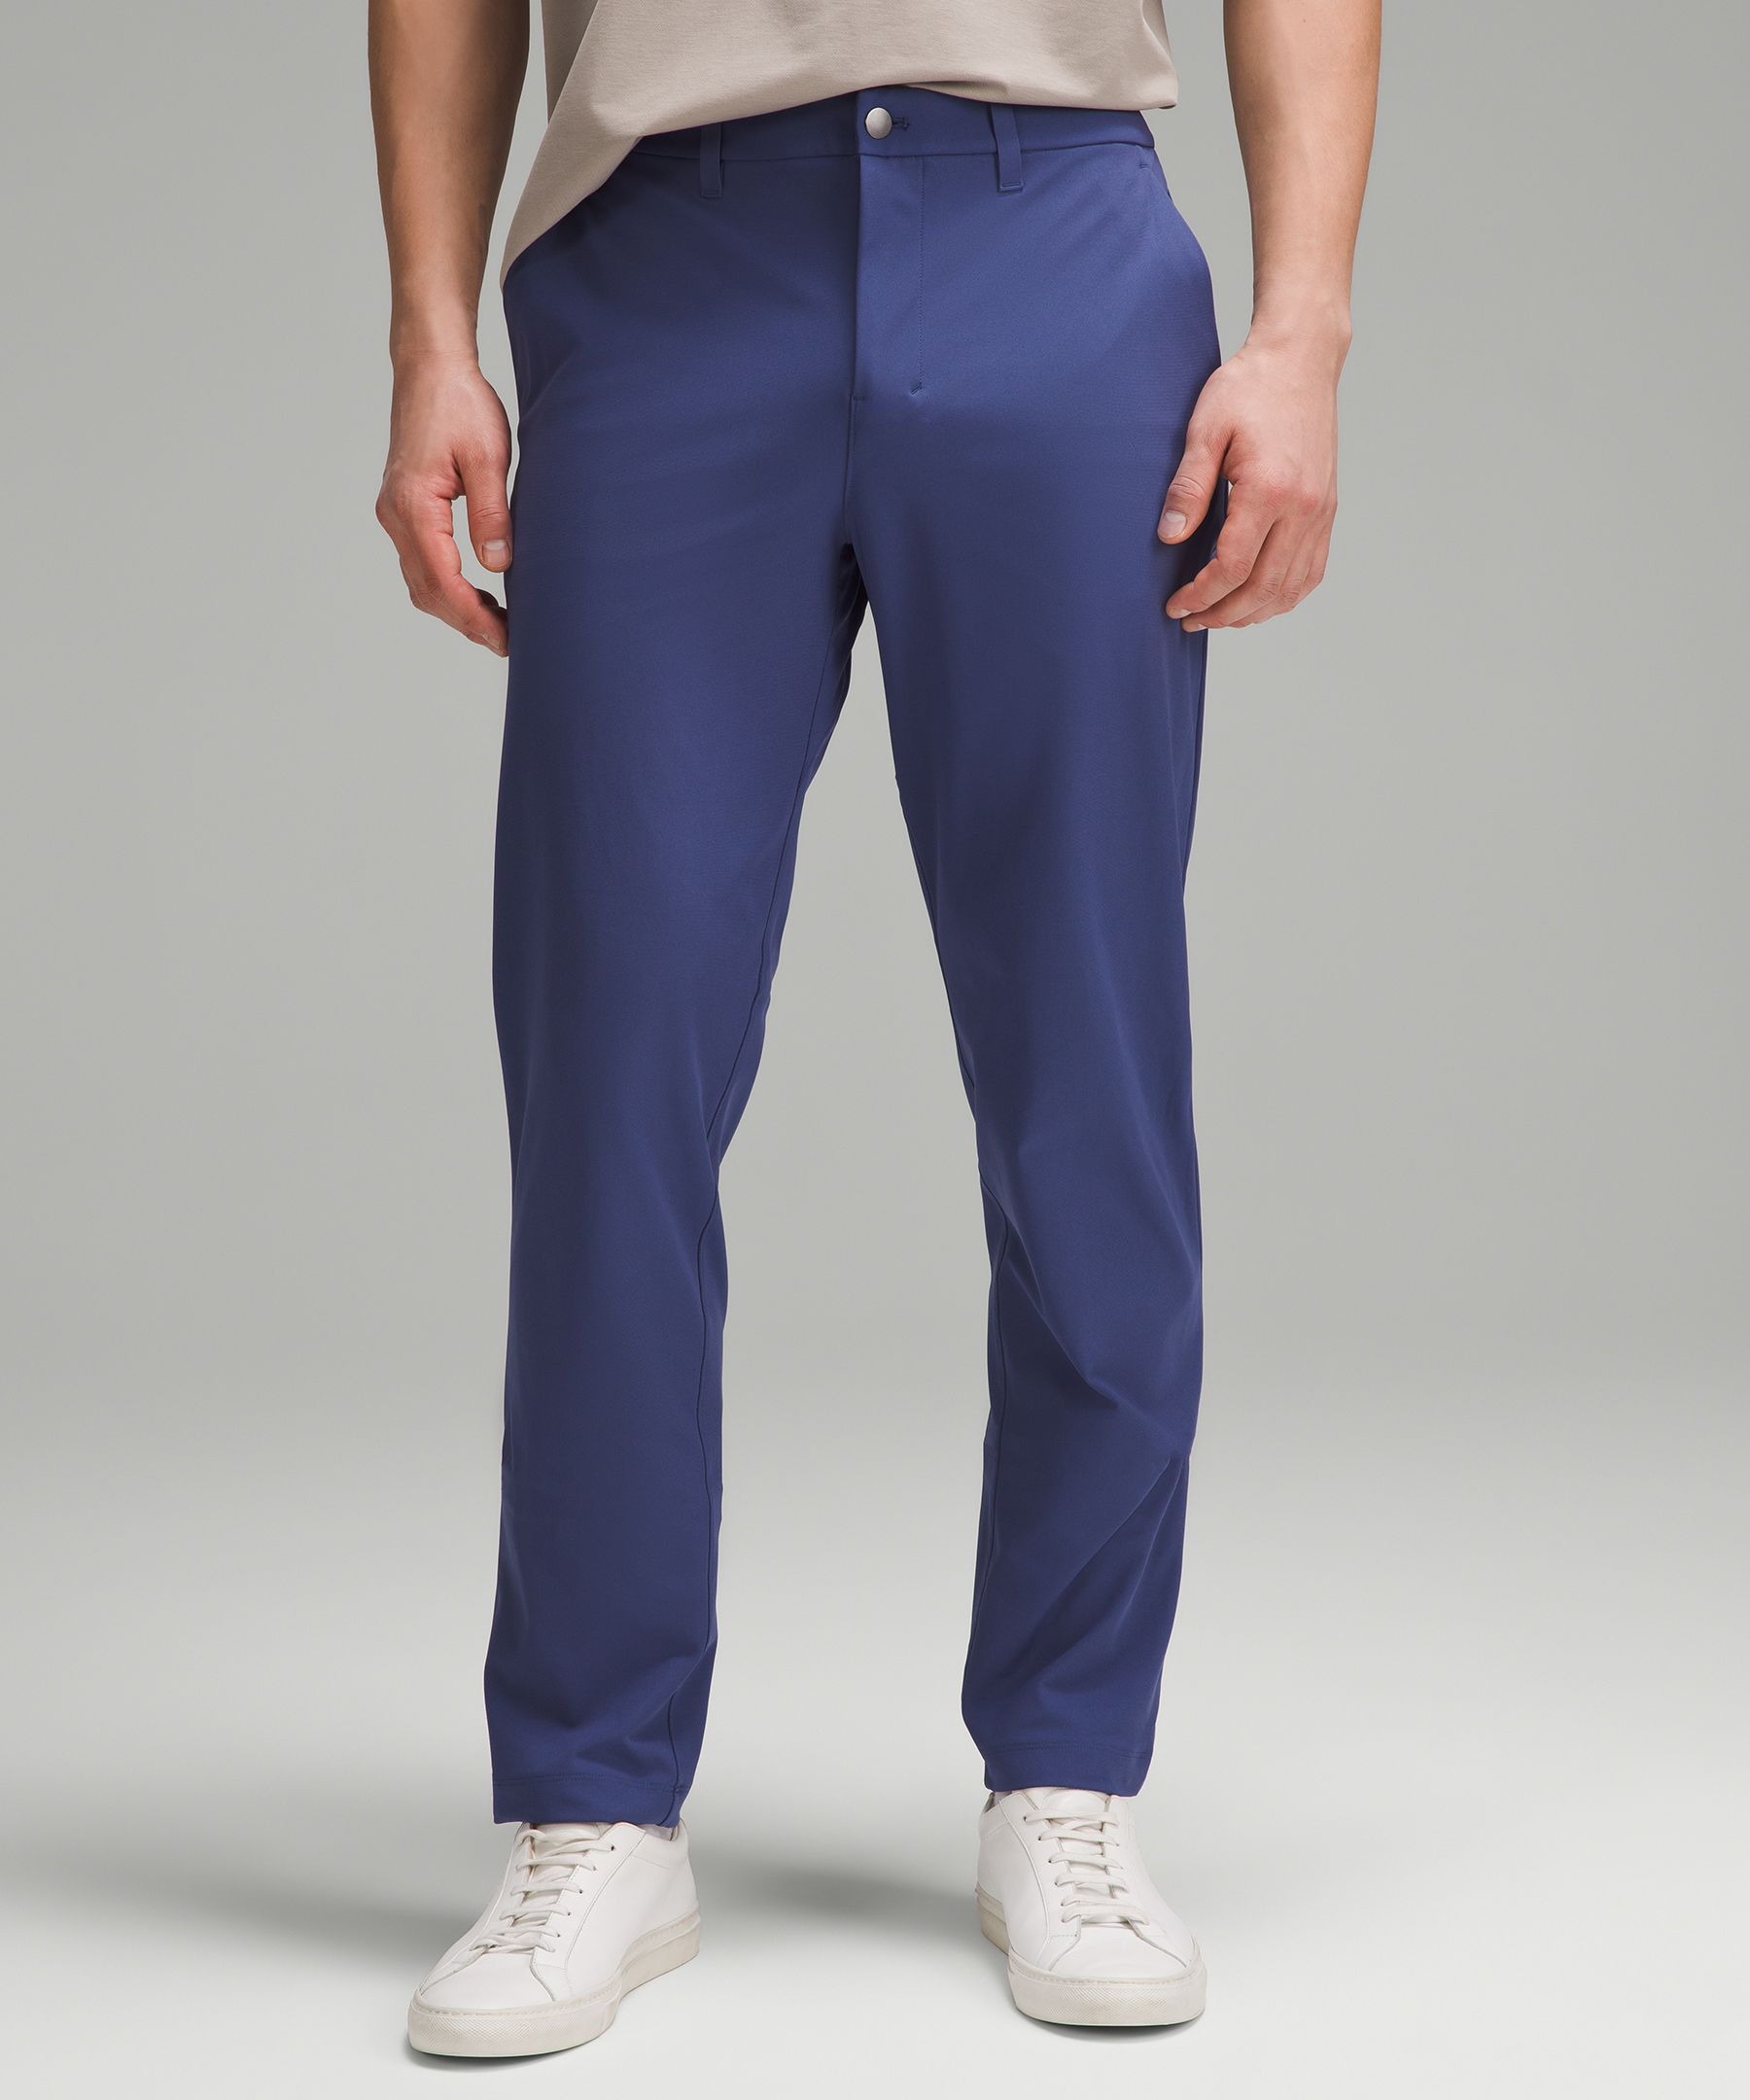 Lululemon Men's ABC PANTS CLASSIC Warpstreme Blue Size 28 X 28 Cotton  Skinny EUC